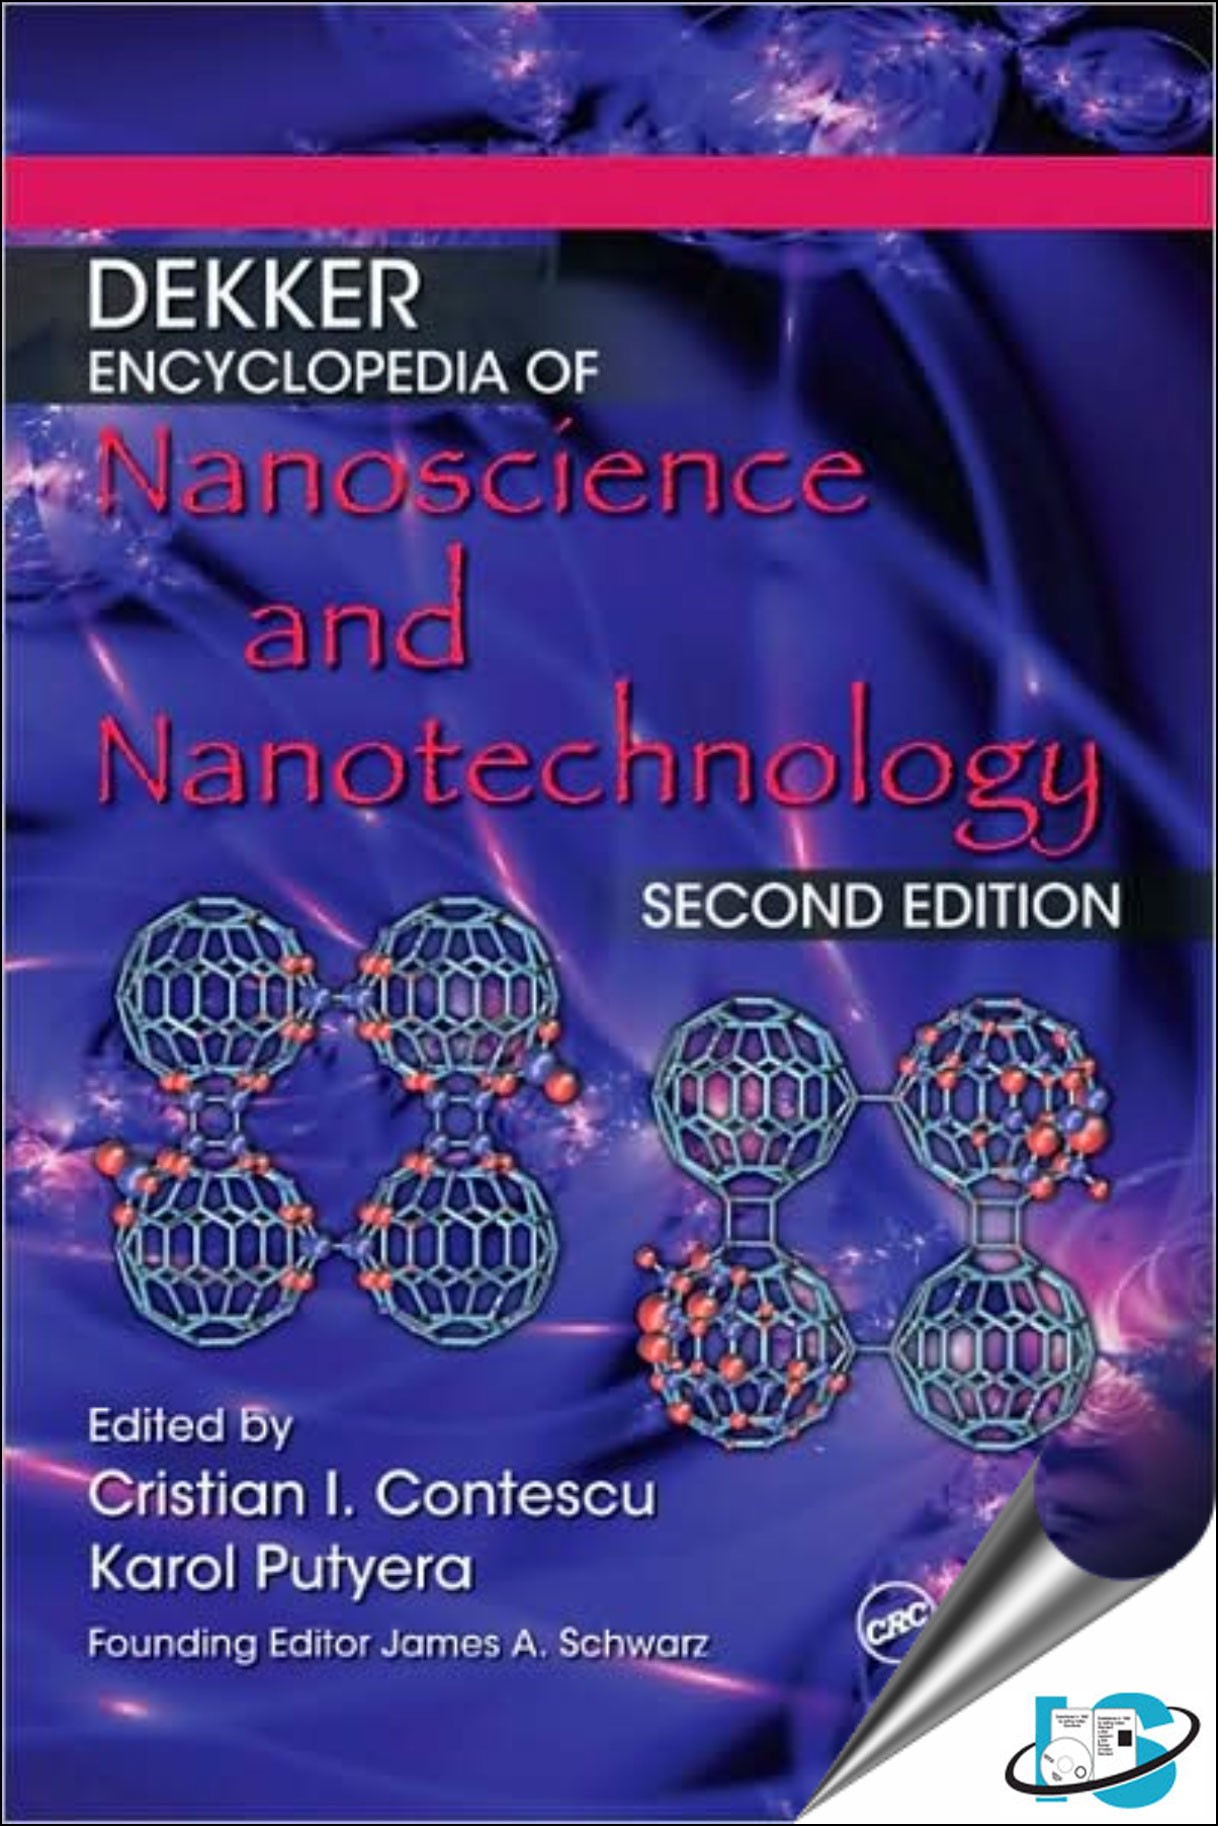 Dekker Encyclopedia of Nanoscience and Nanotechnology, Second Edition - Six Volume Set (Print Version)